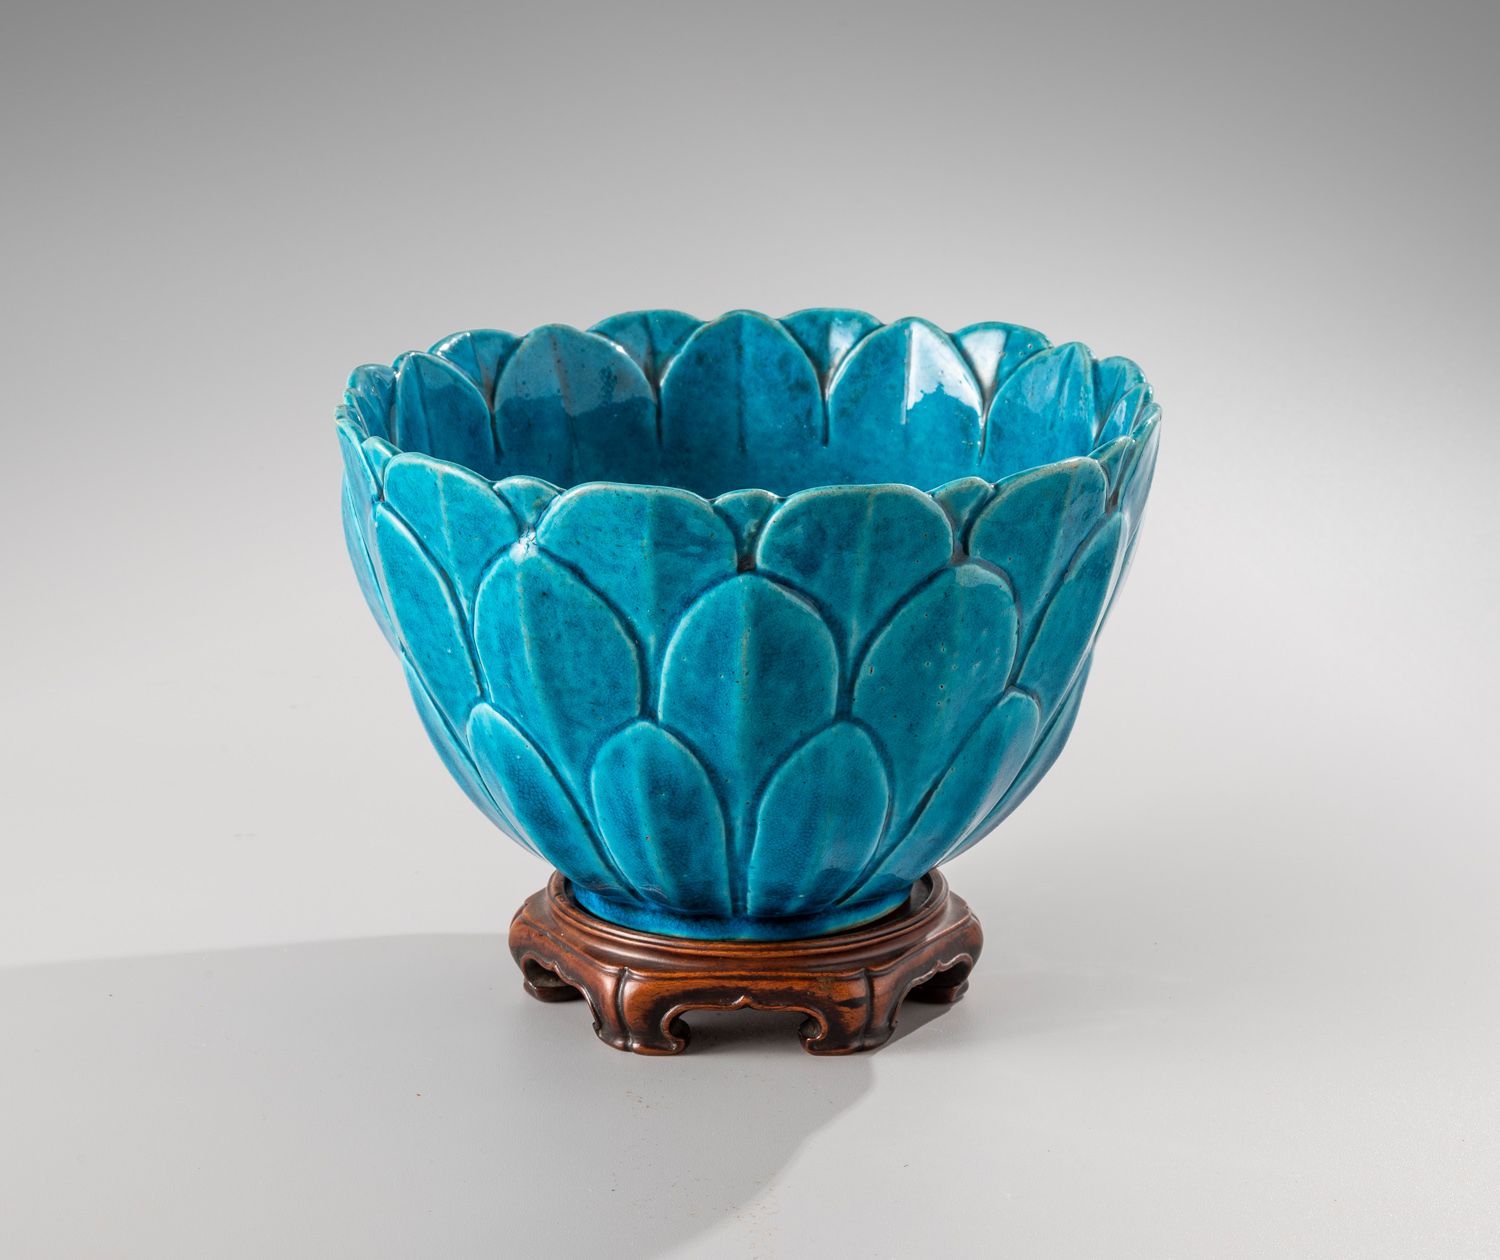 Null 中国，18世纪

绿松石釉面的莲花形状的陶瓷碗

绿松石釉面陶瓷。

直径19厘米 - 高12厘米

底座上的标签 "Roubaud" n °361